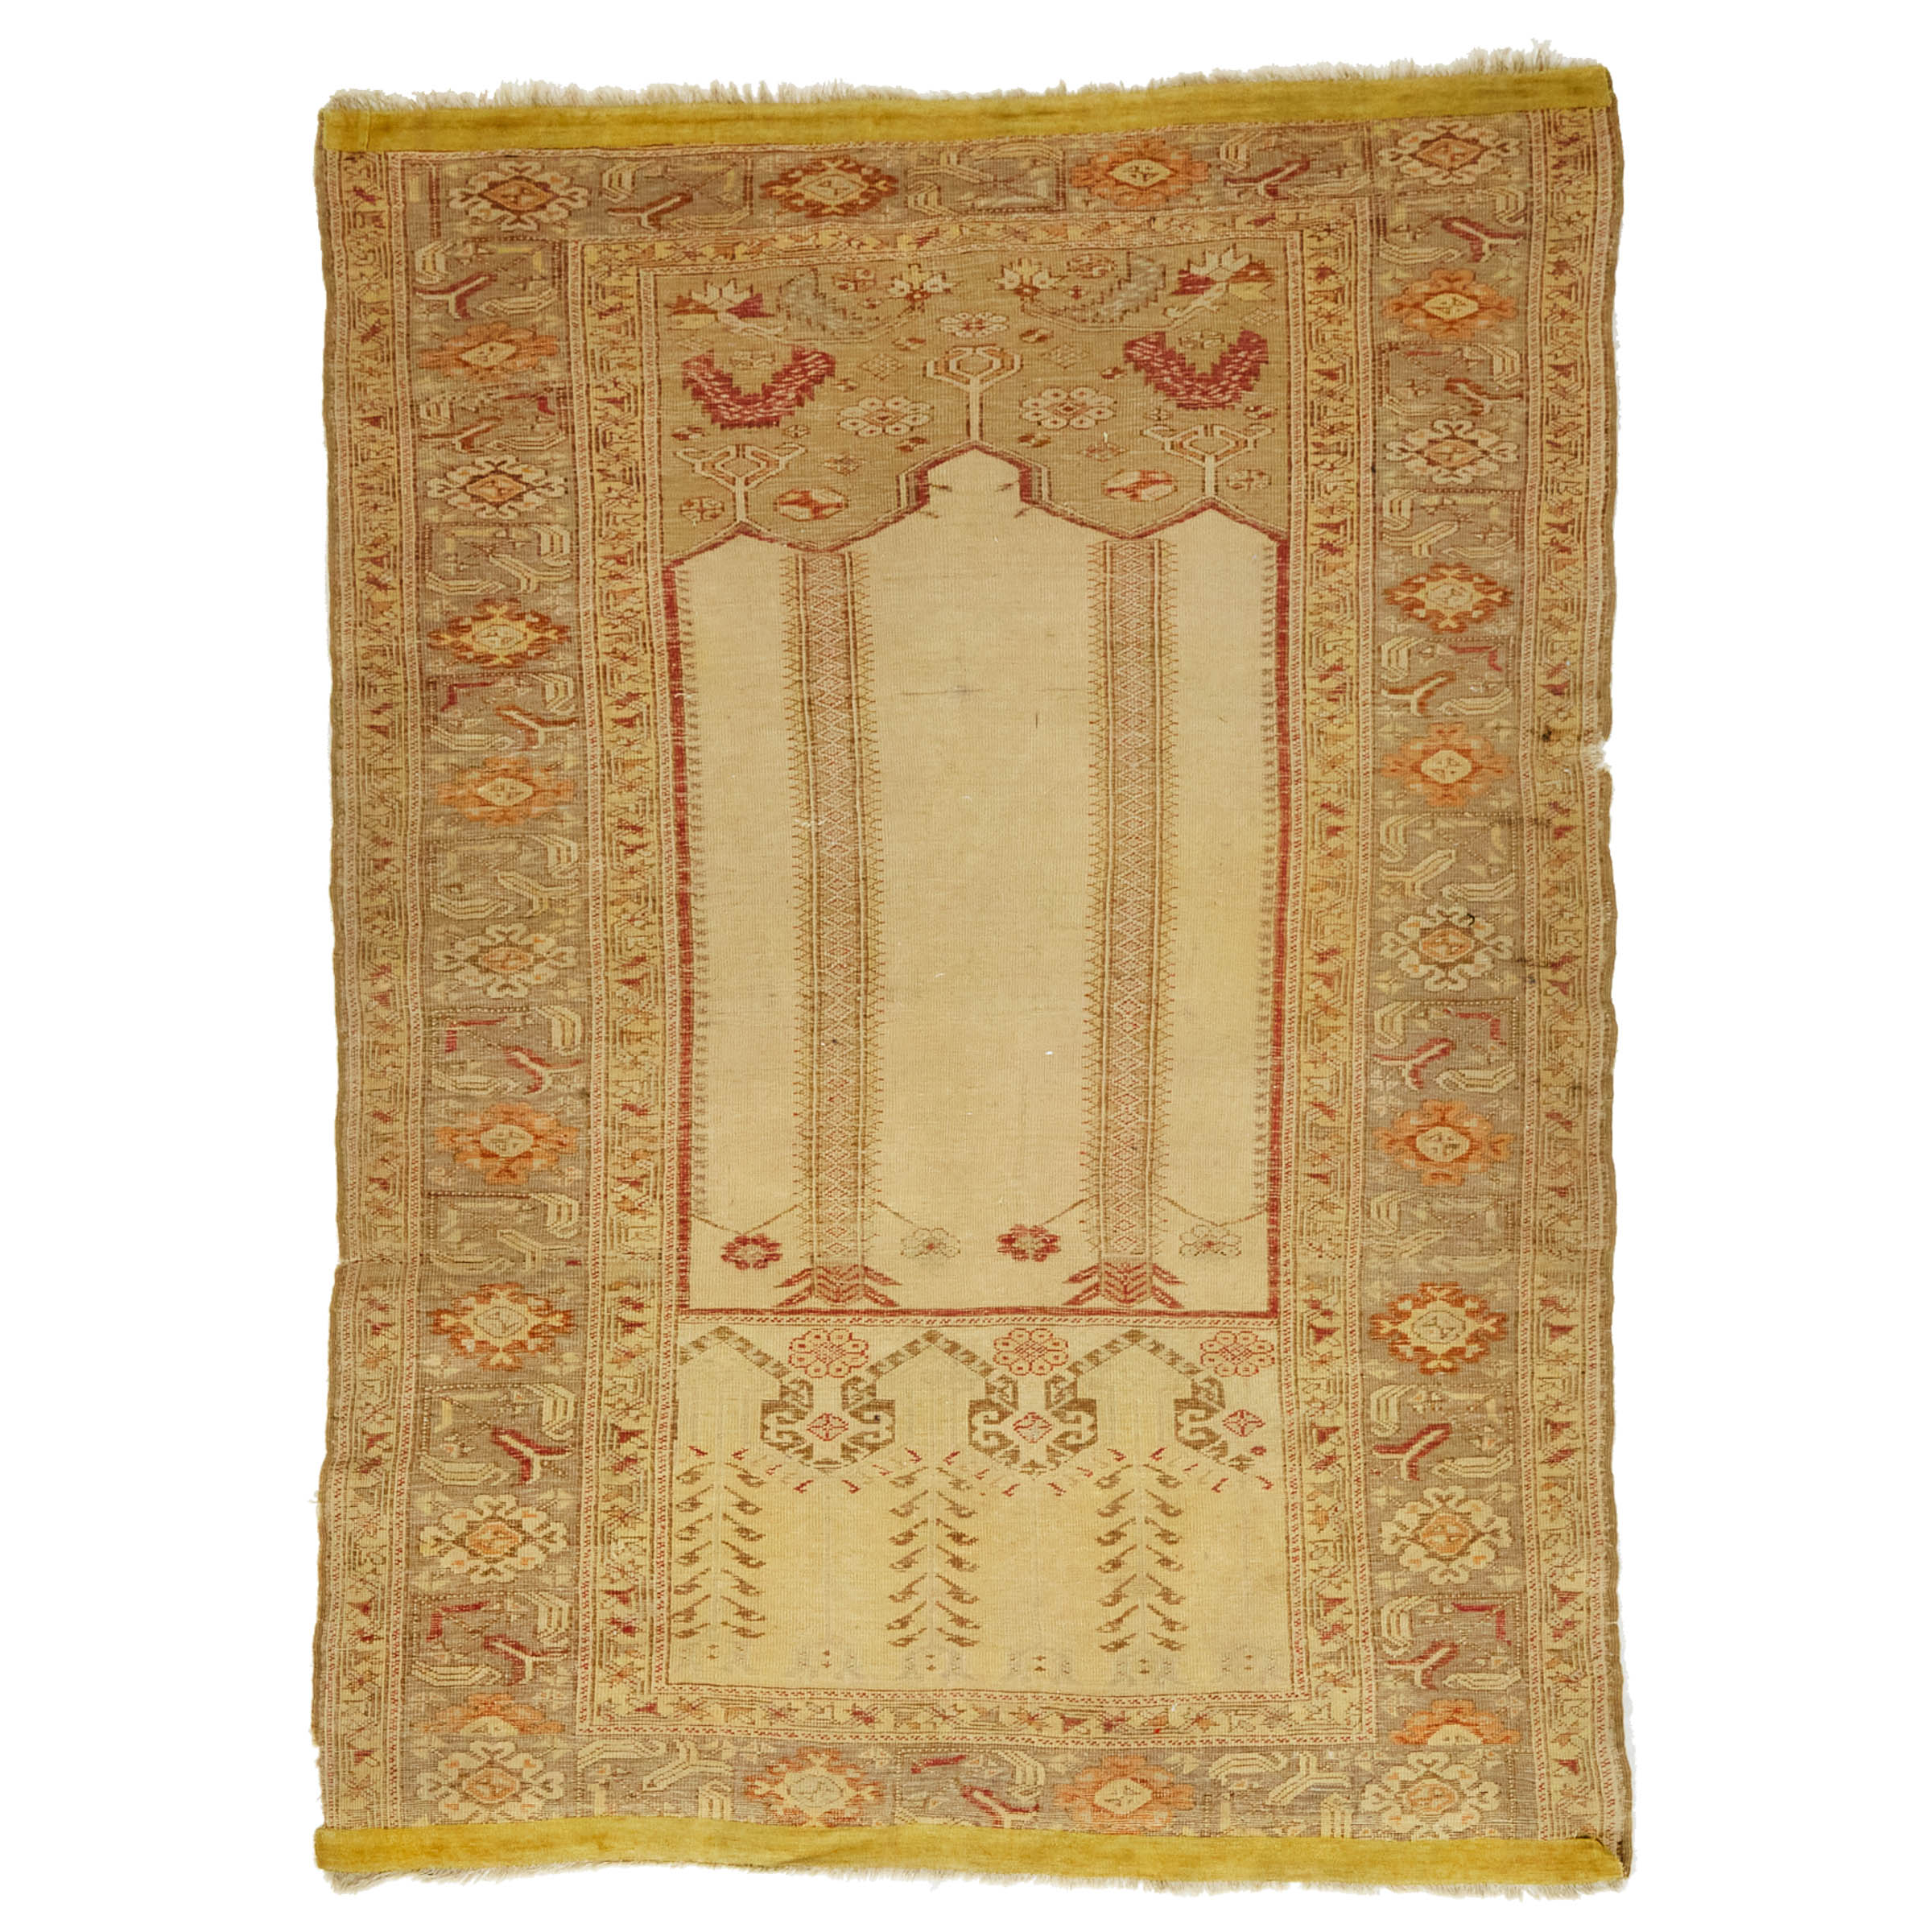 Turkish Konia, Ladik Design Prayer Rug, c.1910/20